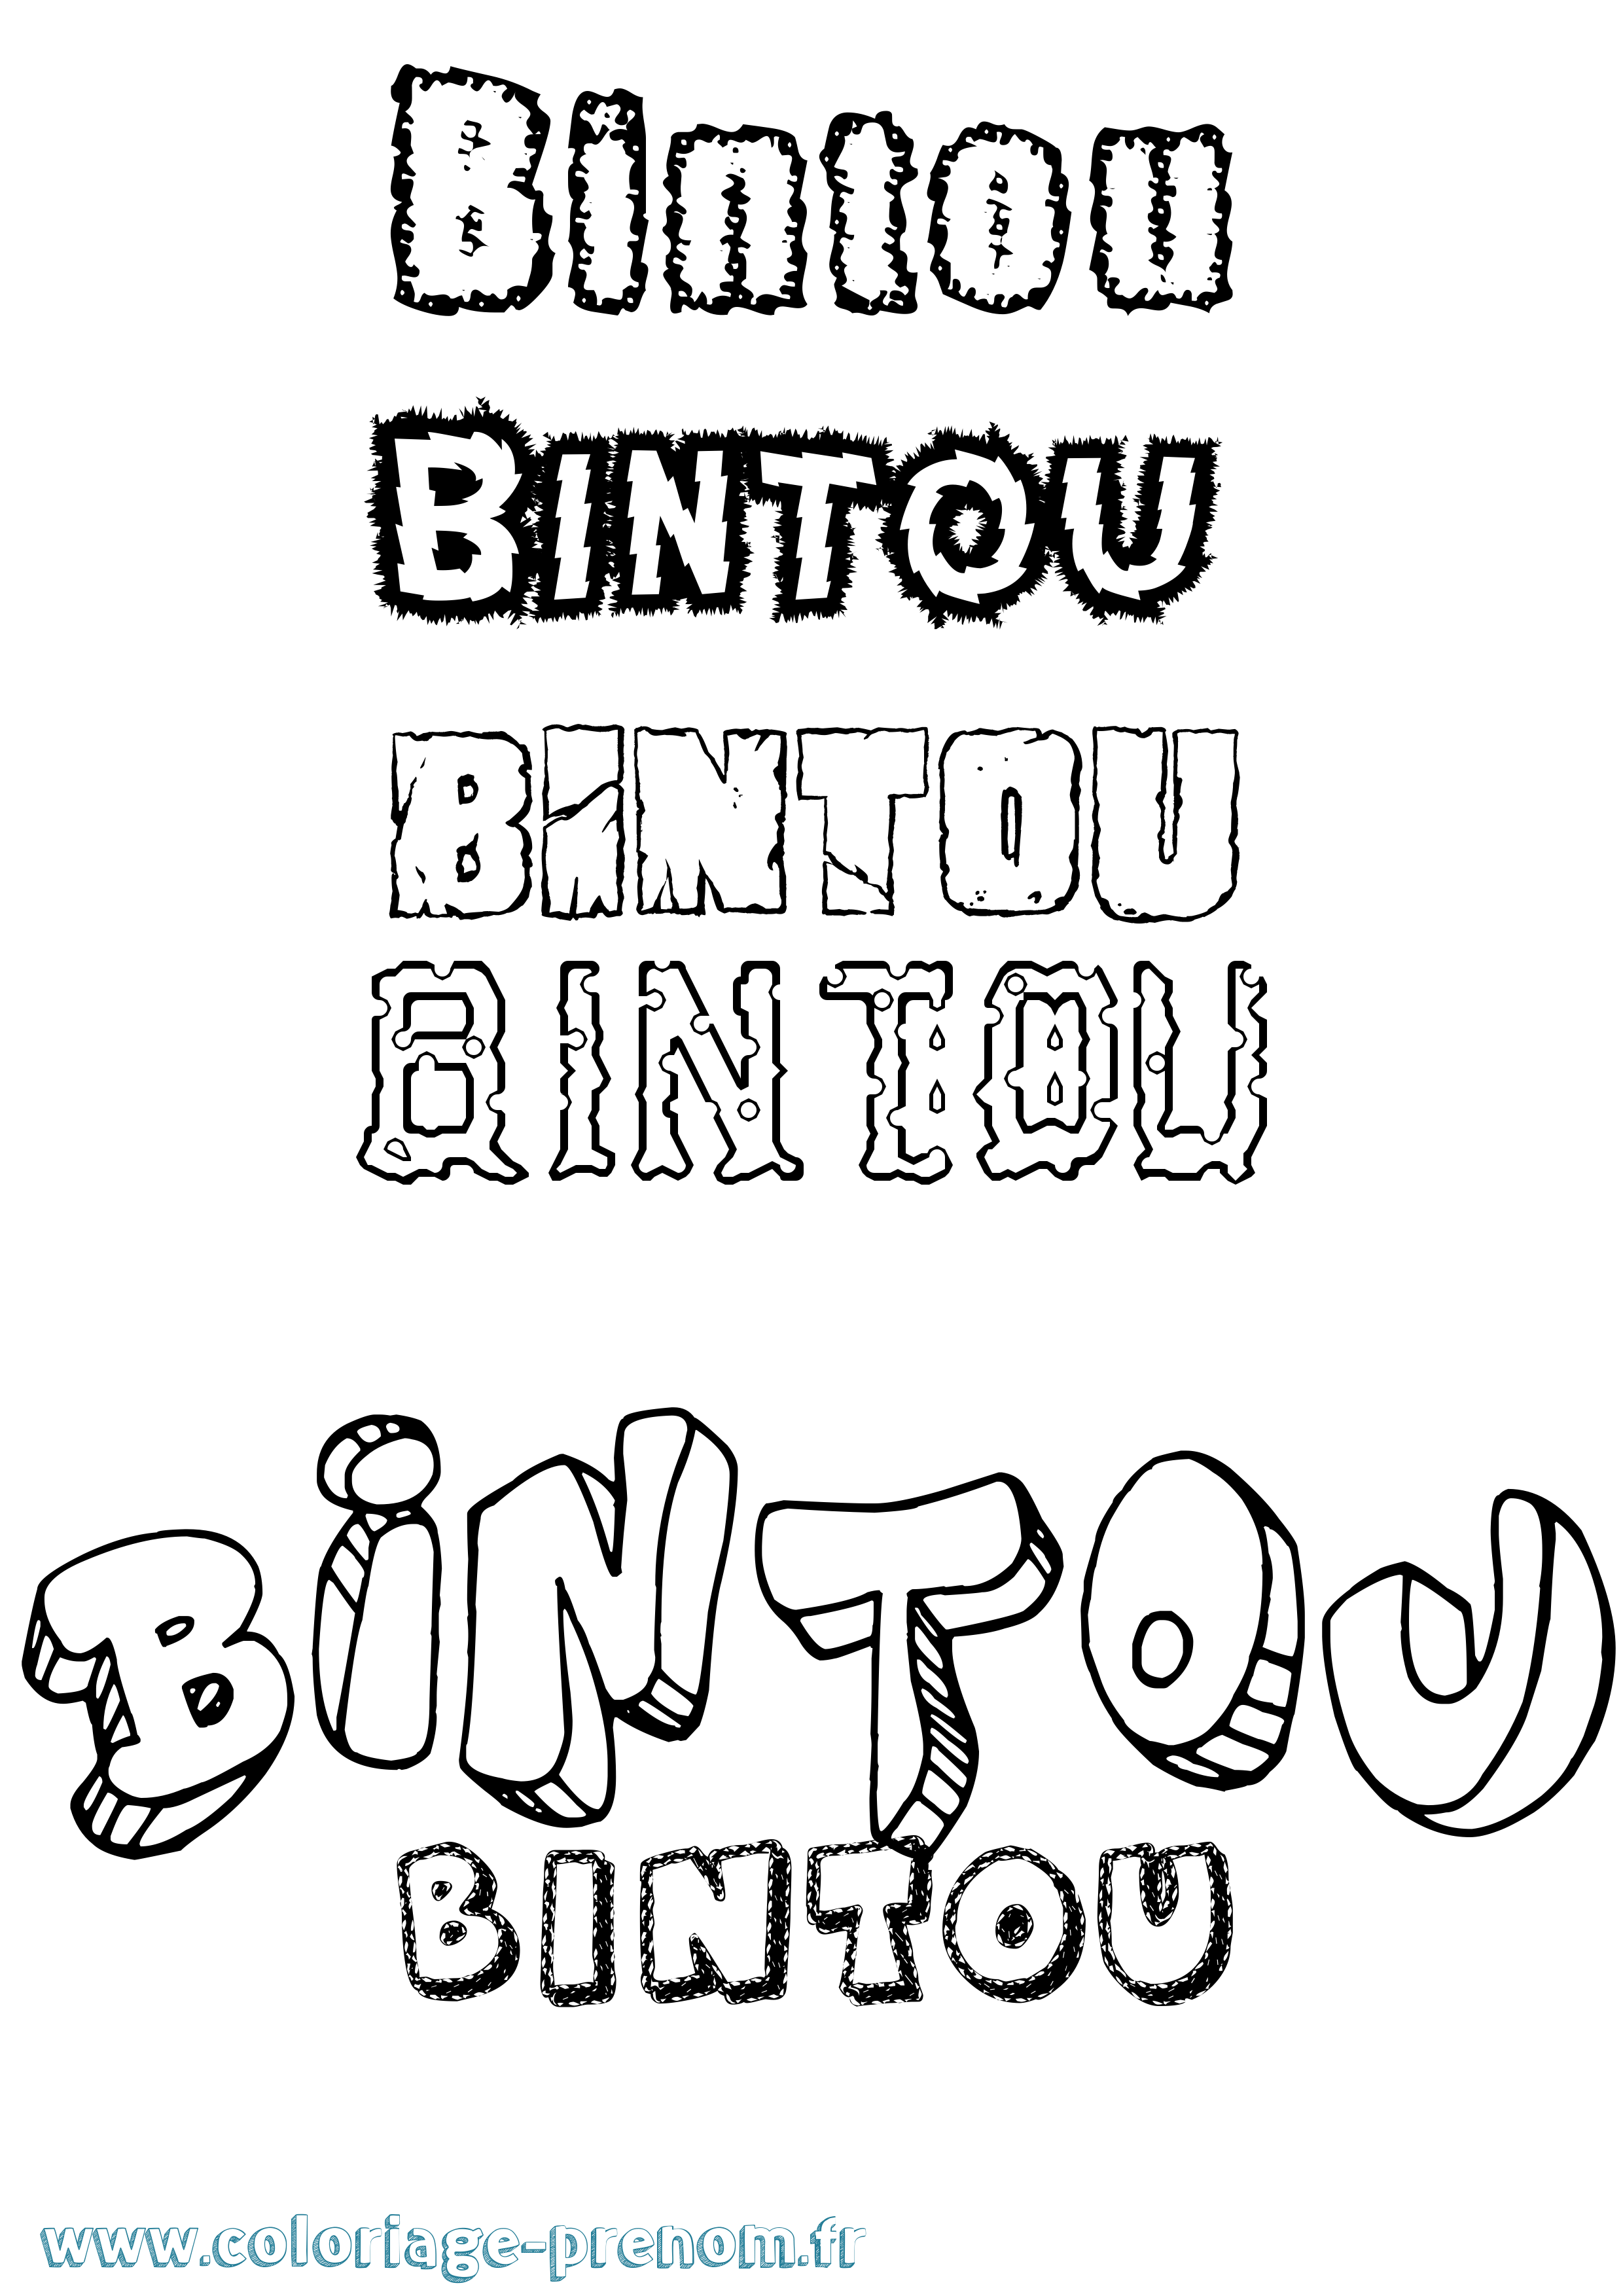 Coloriage prénom Bintou